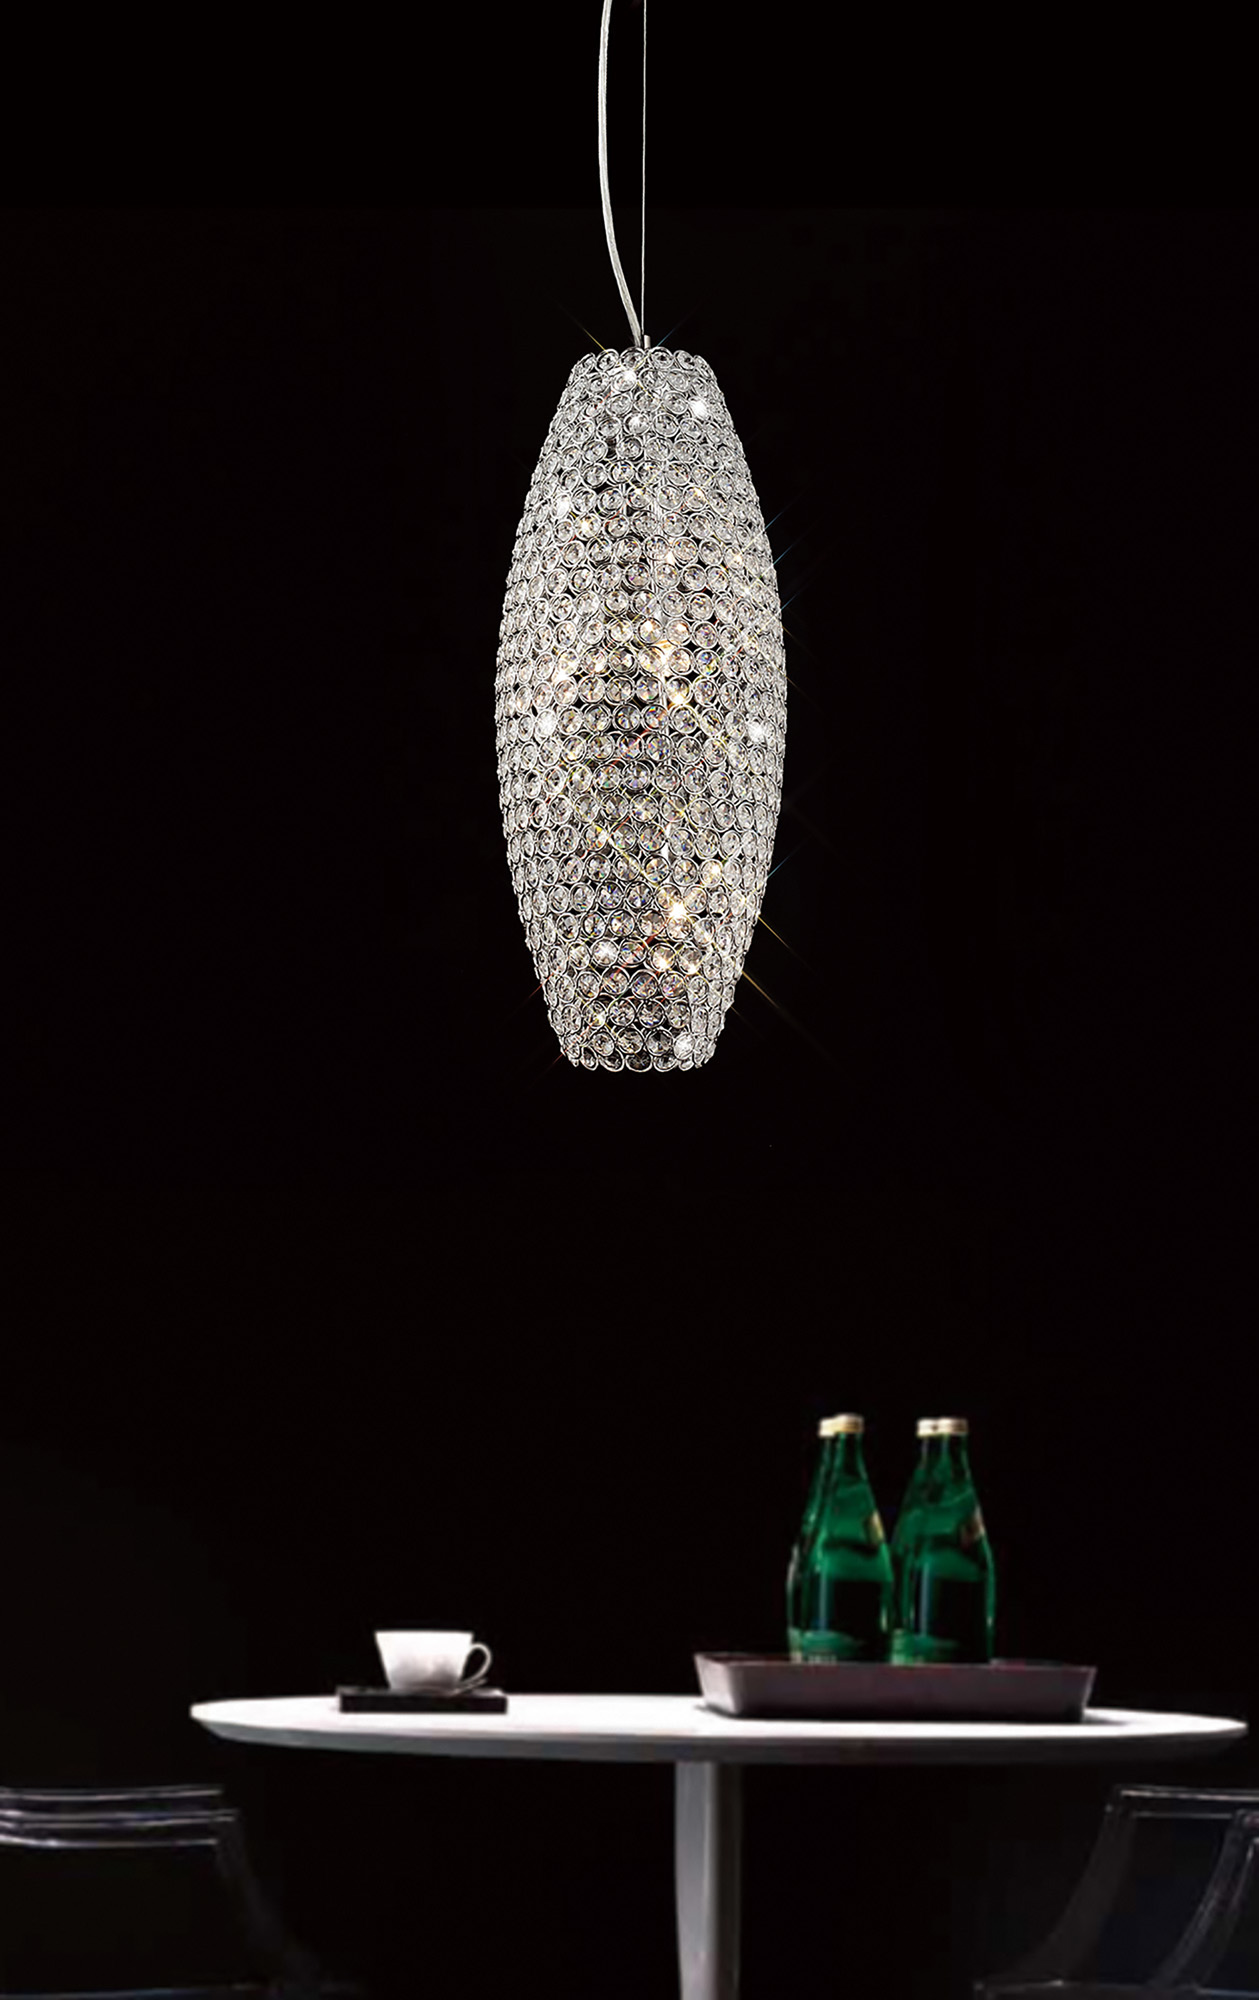 Kos Crystal Table Lamps Diyas Shaded Table Lamps